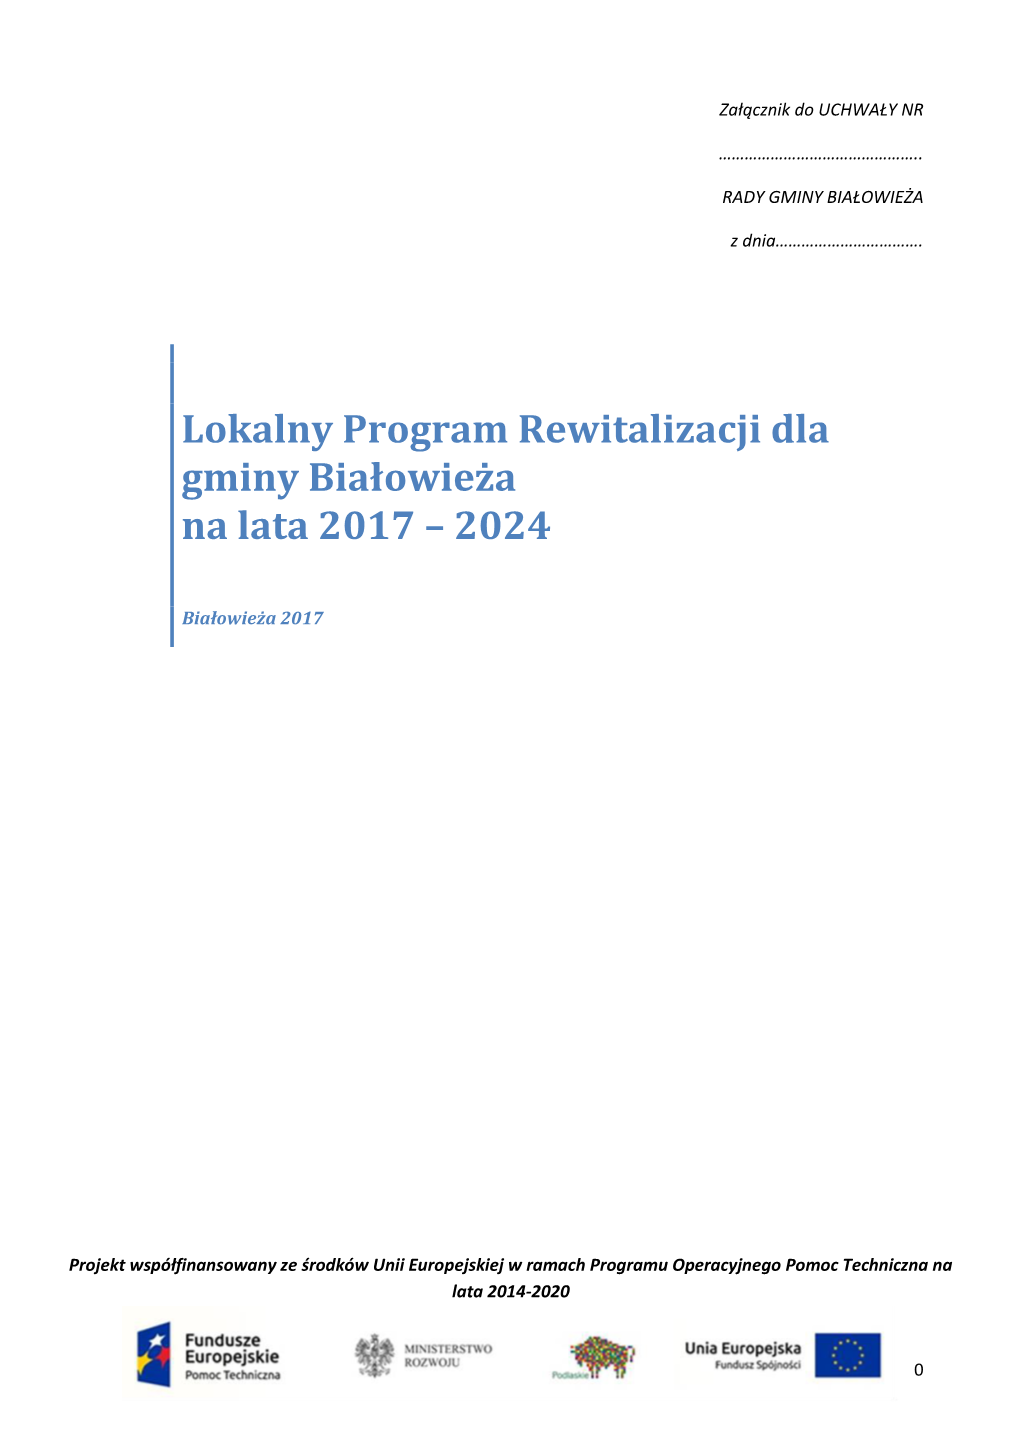 Lokalny Program Rewitalizacji Dla Gminy Białowieża Na Lata 2017 – 2024